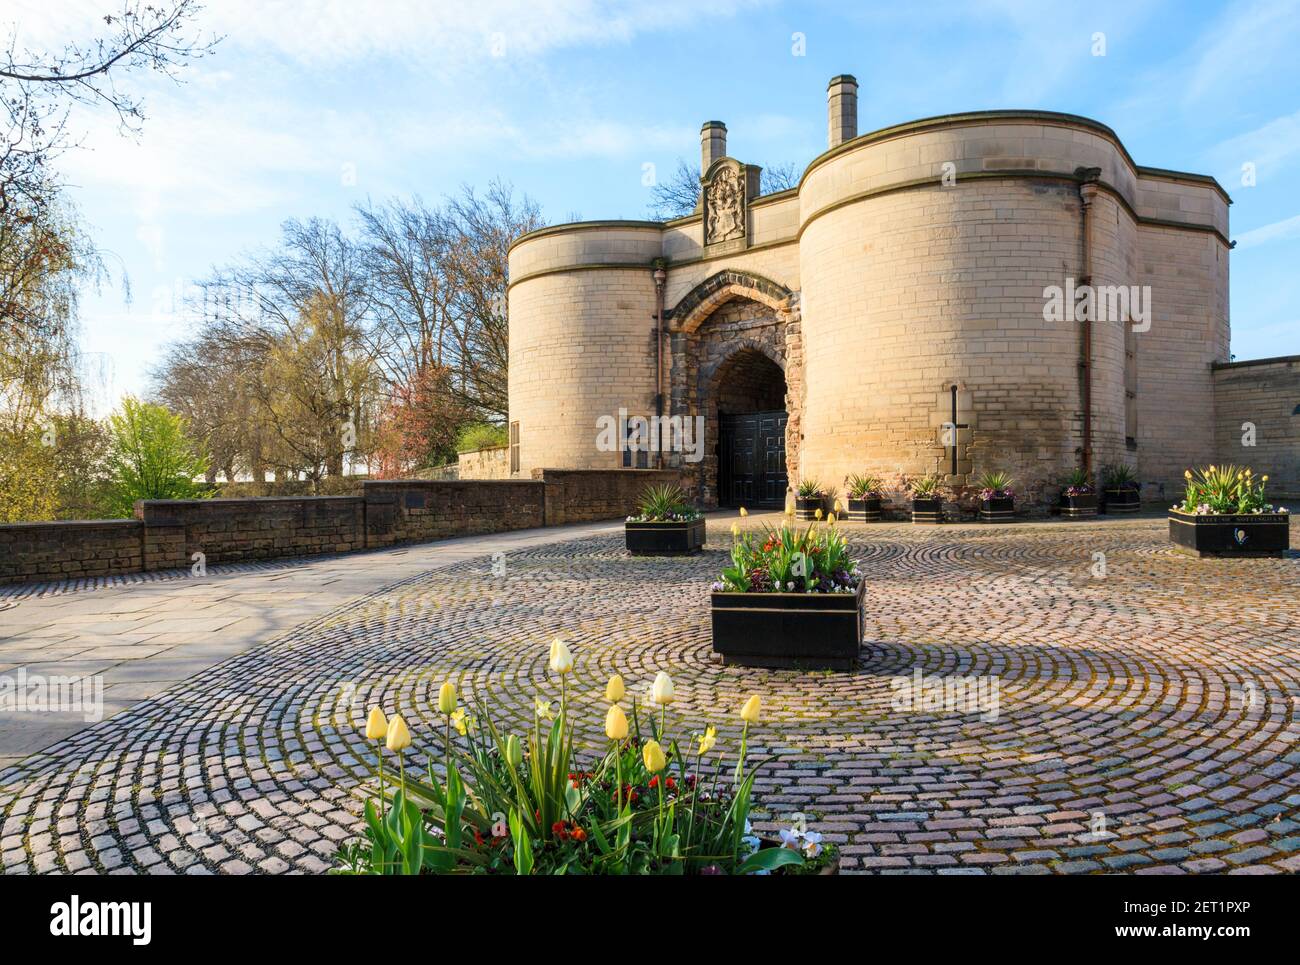 El Gate House y entrada al castillo de Nottingham, Nottingham, Inglaterra, Reino Unido. Foto de stock